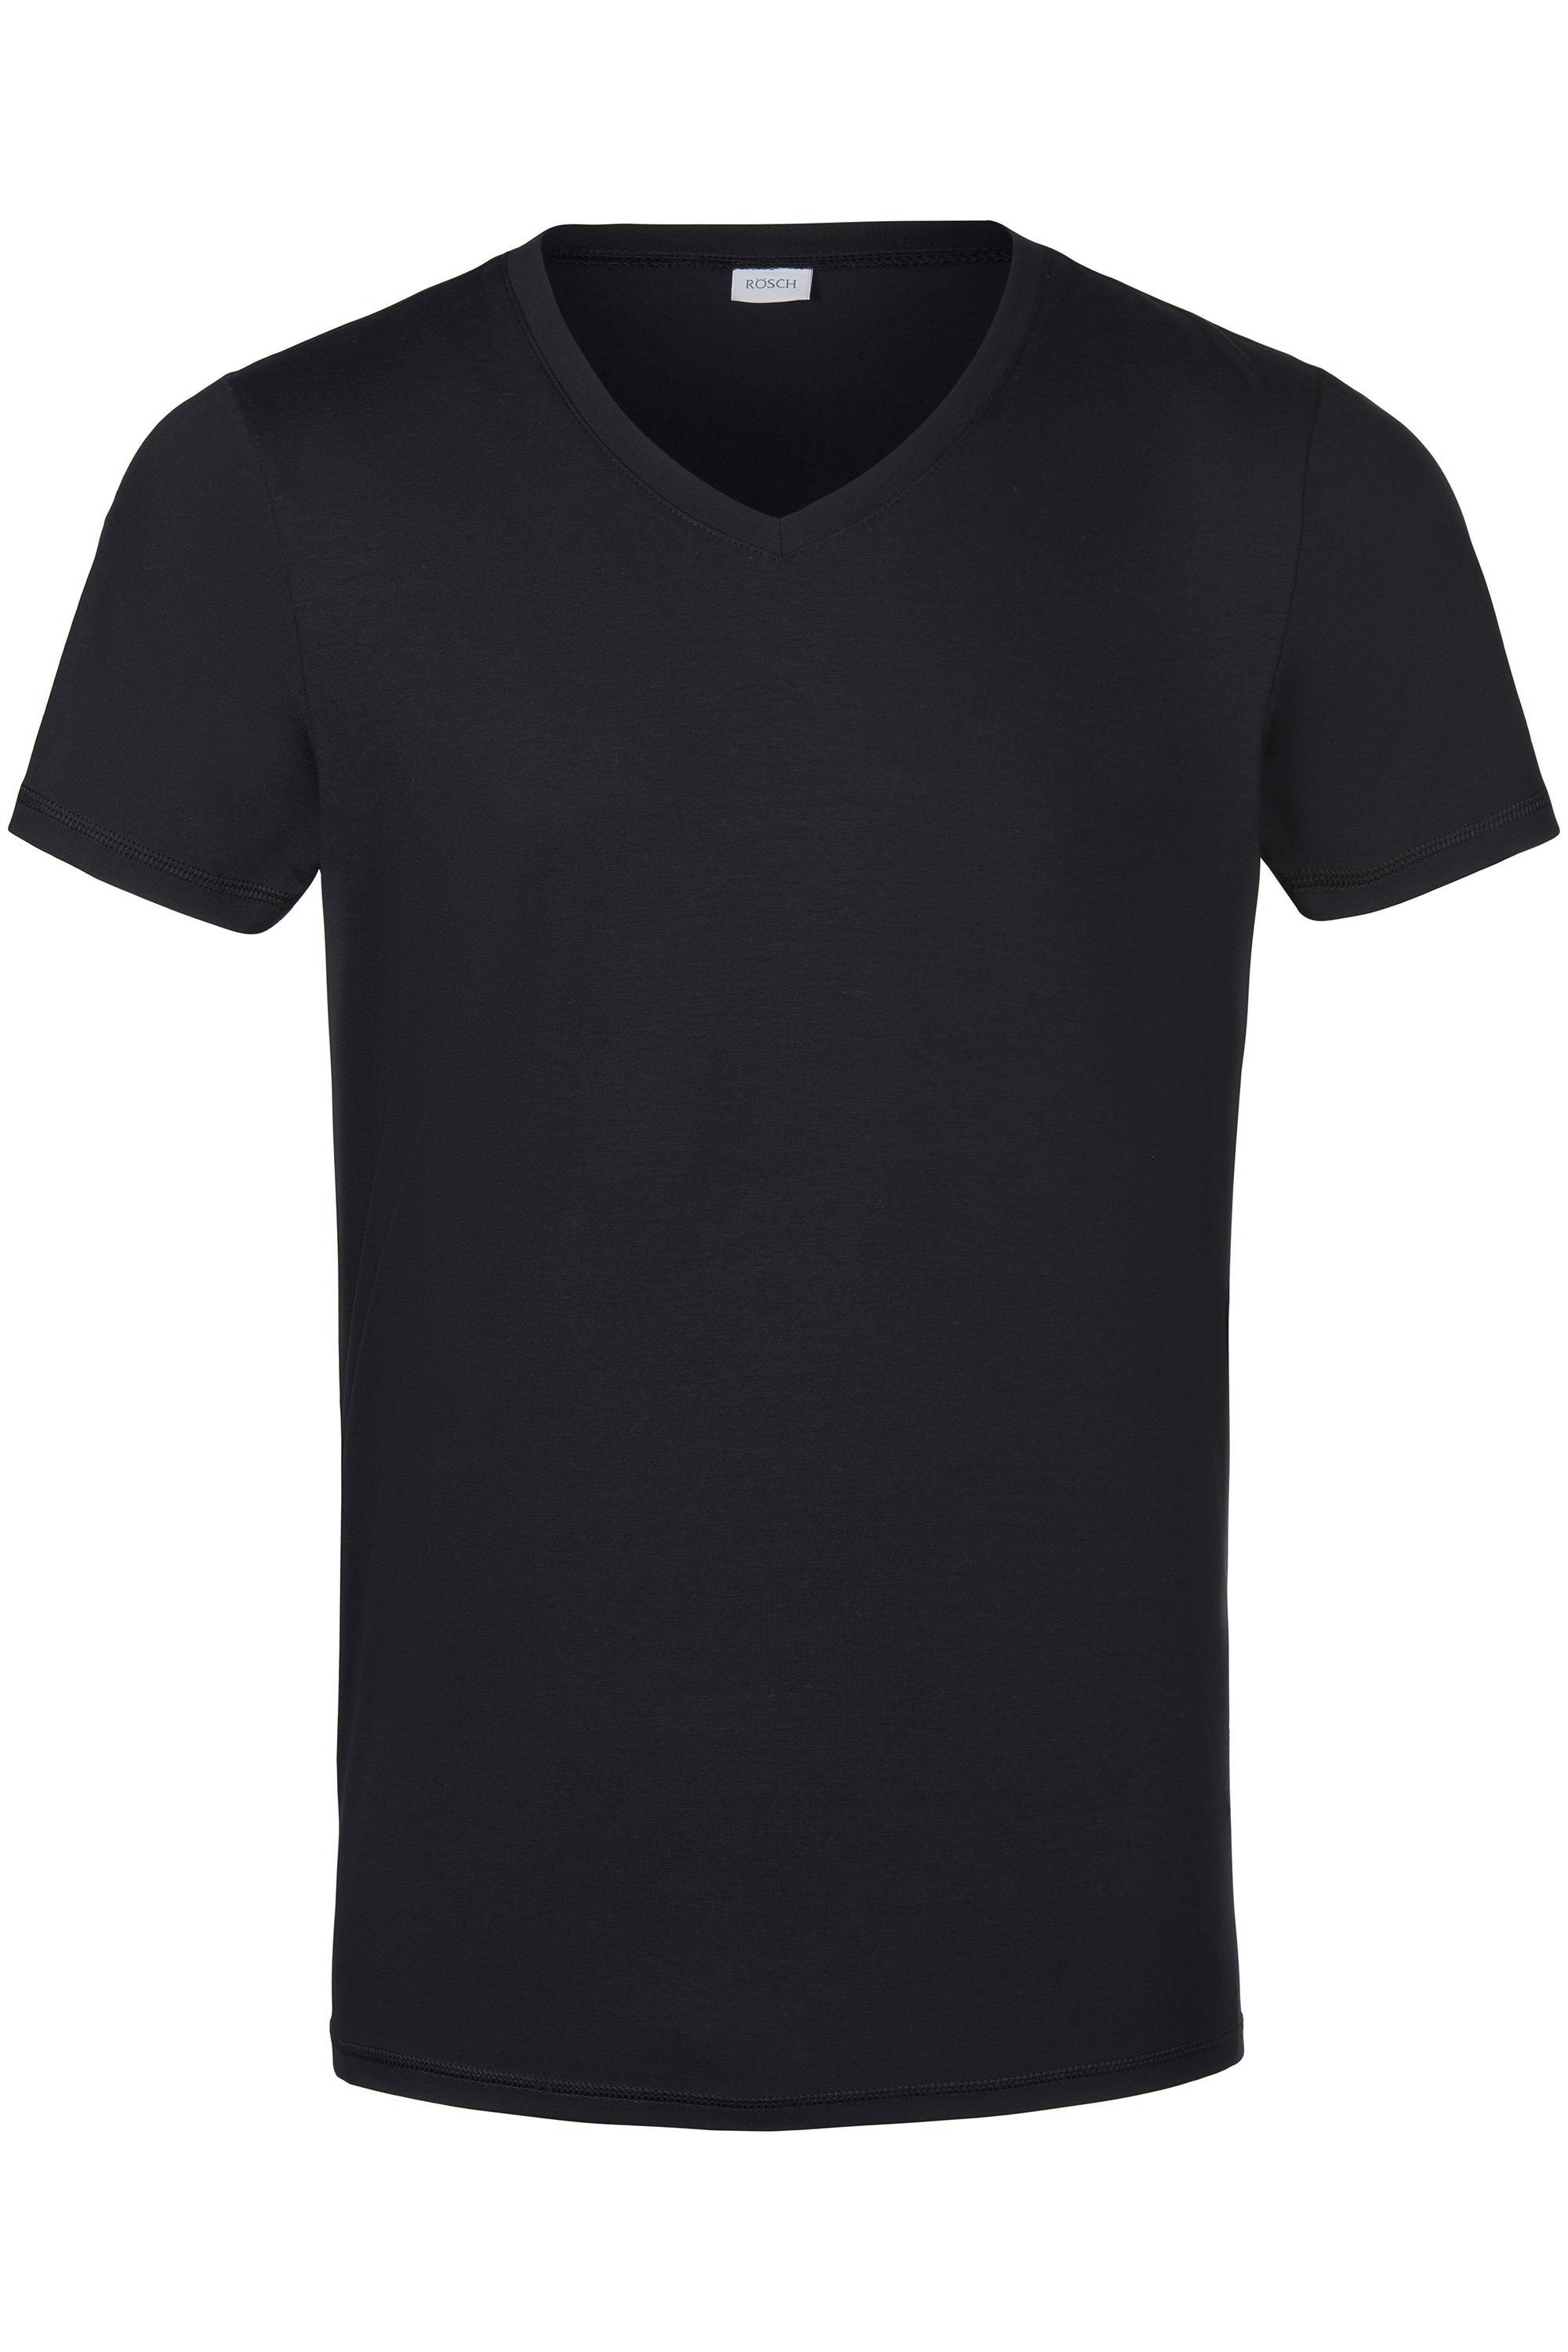 Herren Basic T-Shirt mit V-Ausschnitt Schwarz